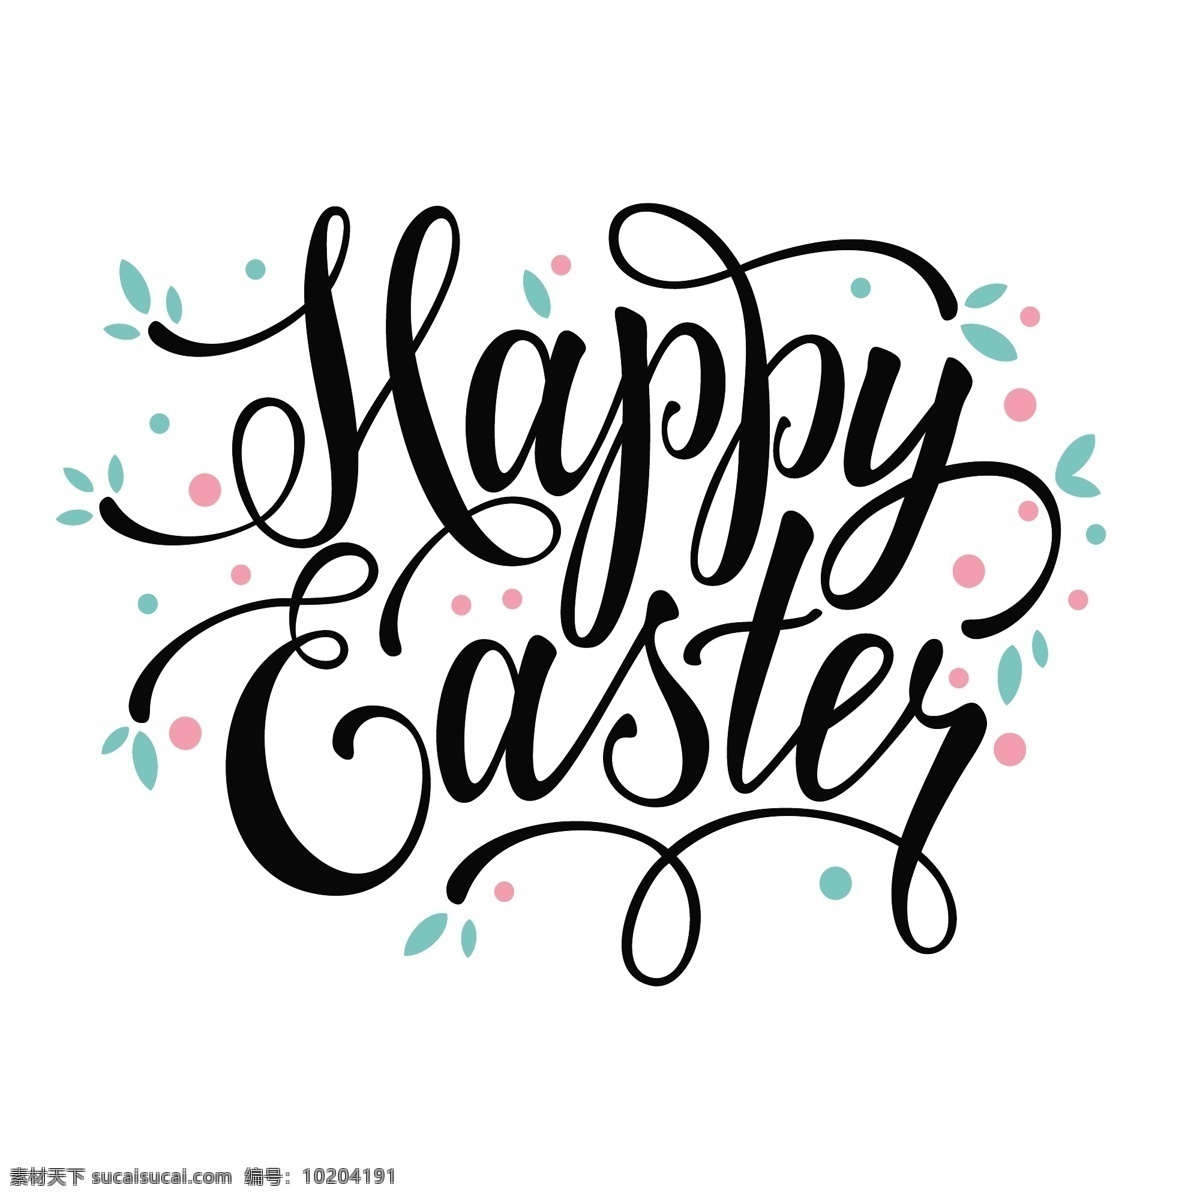 复活节 背景 抽象 卡片 手 墙纸 春天 黑色 庆祝 快乐 节日 标志 墨水 装饰 宗教 兔子 元素 鸡蛋 书法